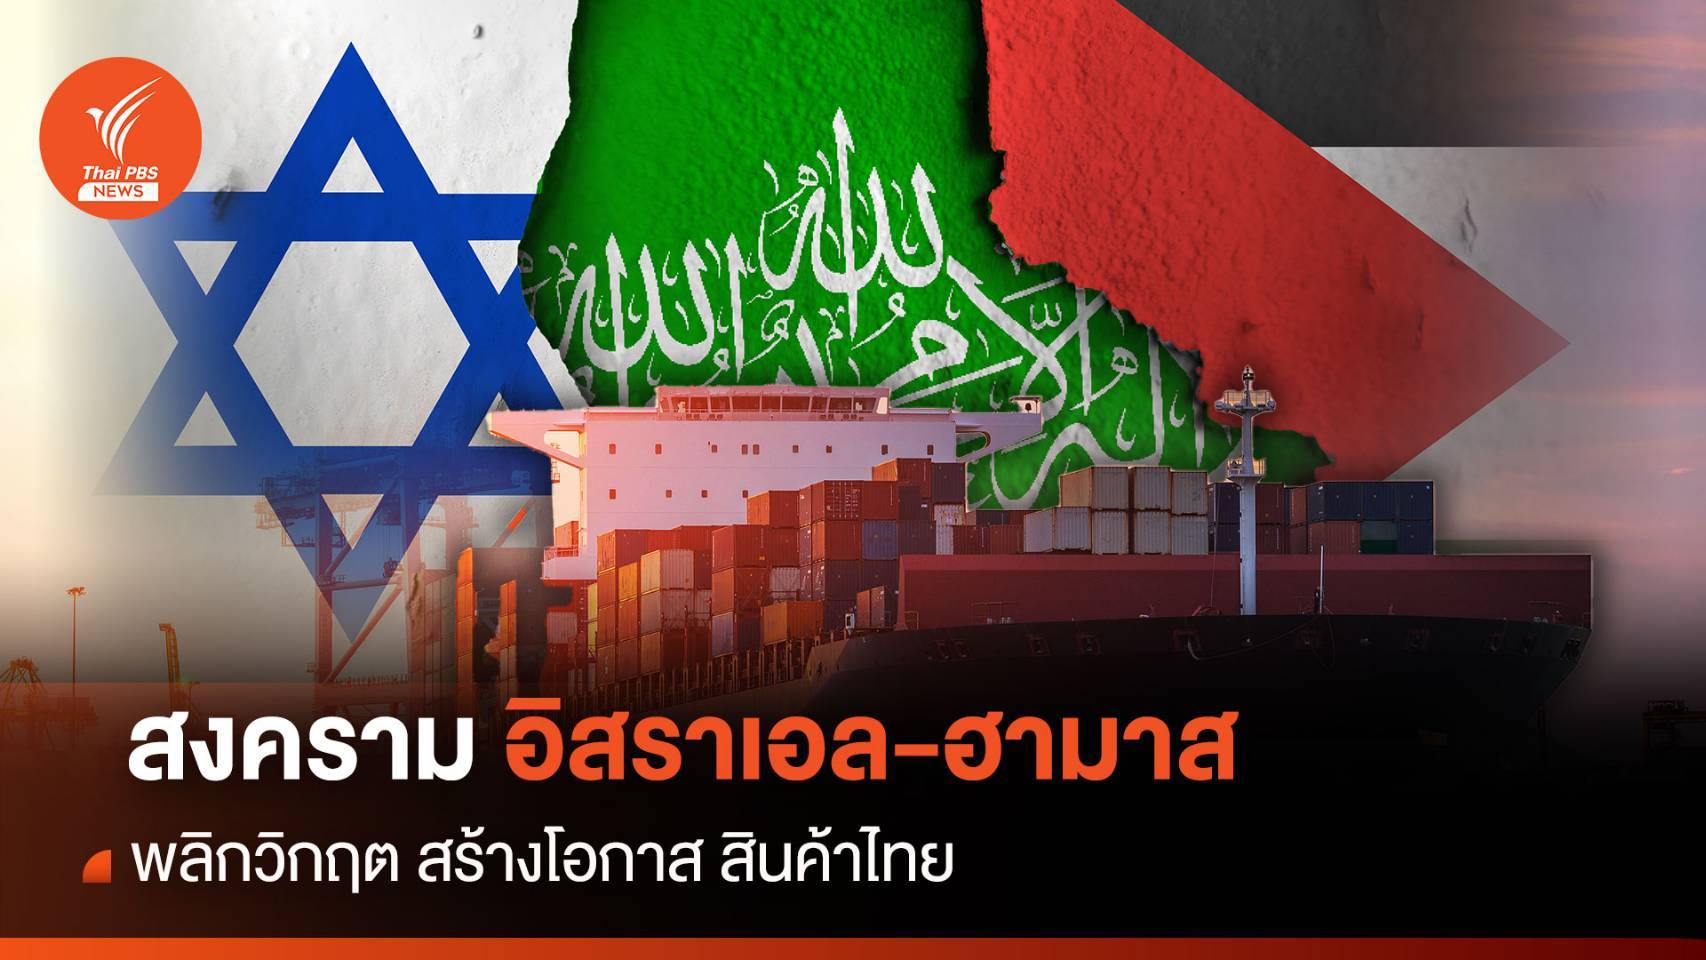 พลิกวิกฤต "สงครามอิสราเอล-ฮามาส" สร้างโอกาส สินค้าไทย